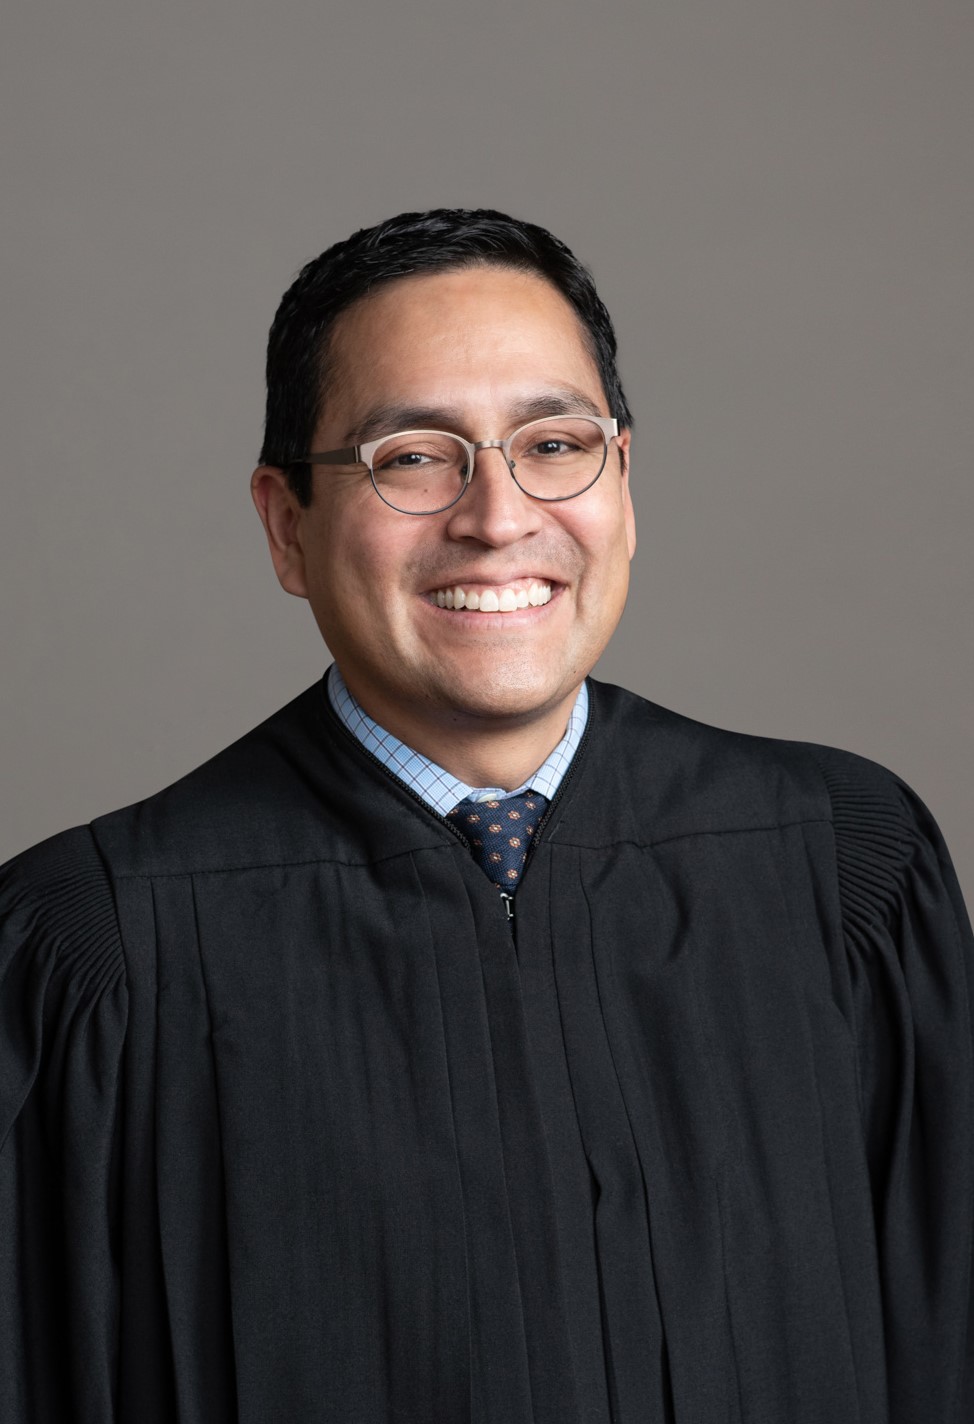 Judge J. Michael Diaz